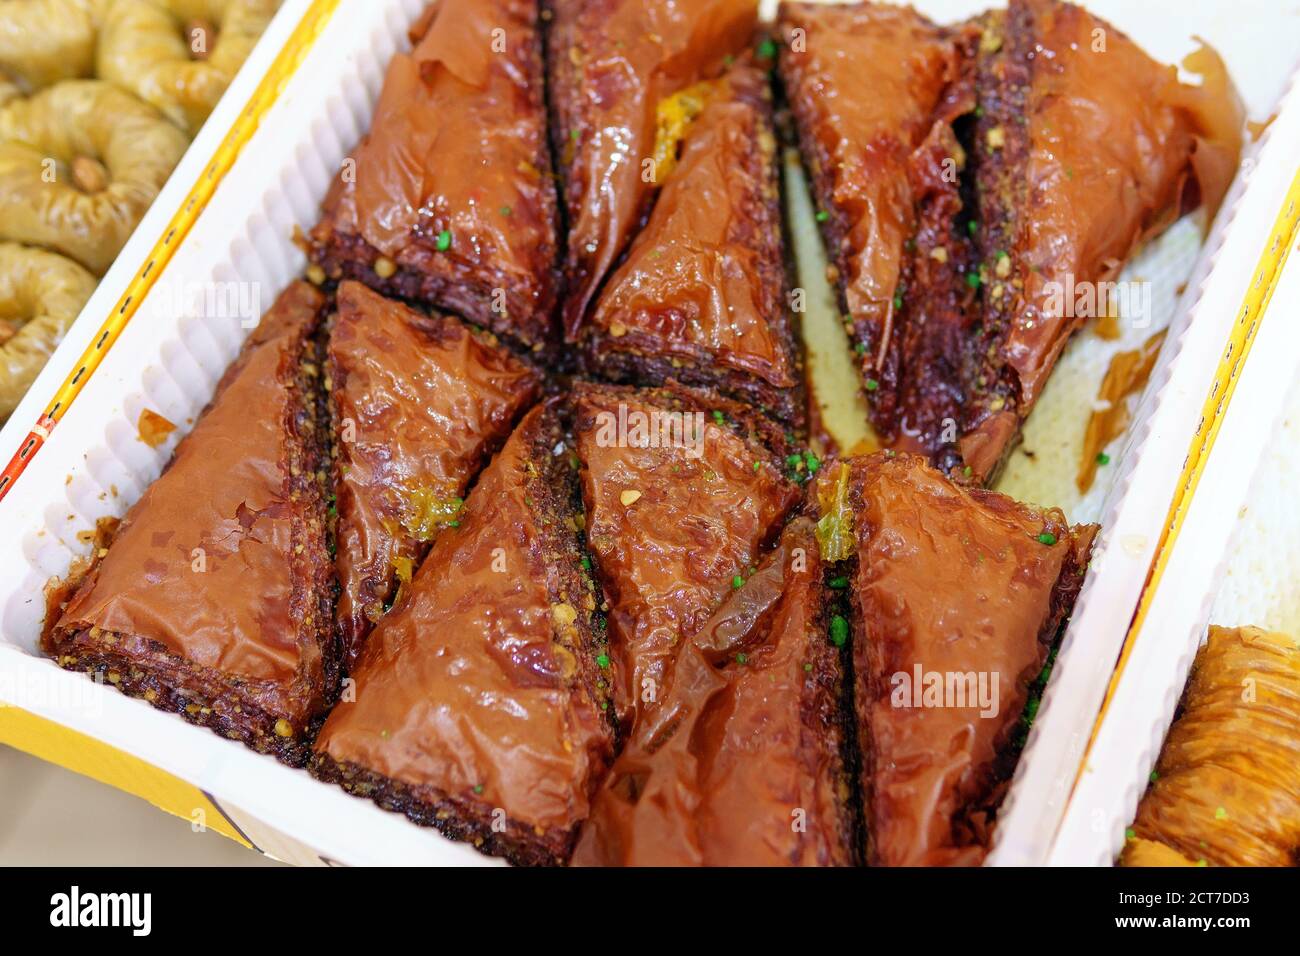 Baklava oder Baklava ist eine orientalische Süße in Form eines in Butter und Sirup getränkten Schichtkuchen mit einer Füllung aus gemahlenen Nüssen, Zucker und Kardamom. Stockfoto